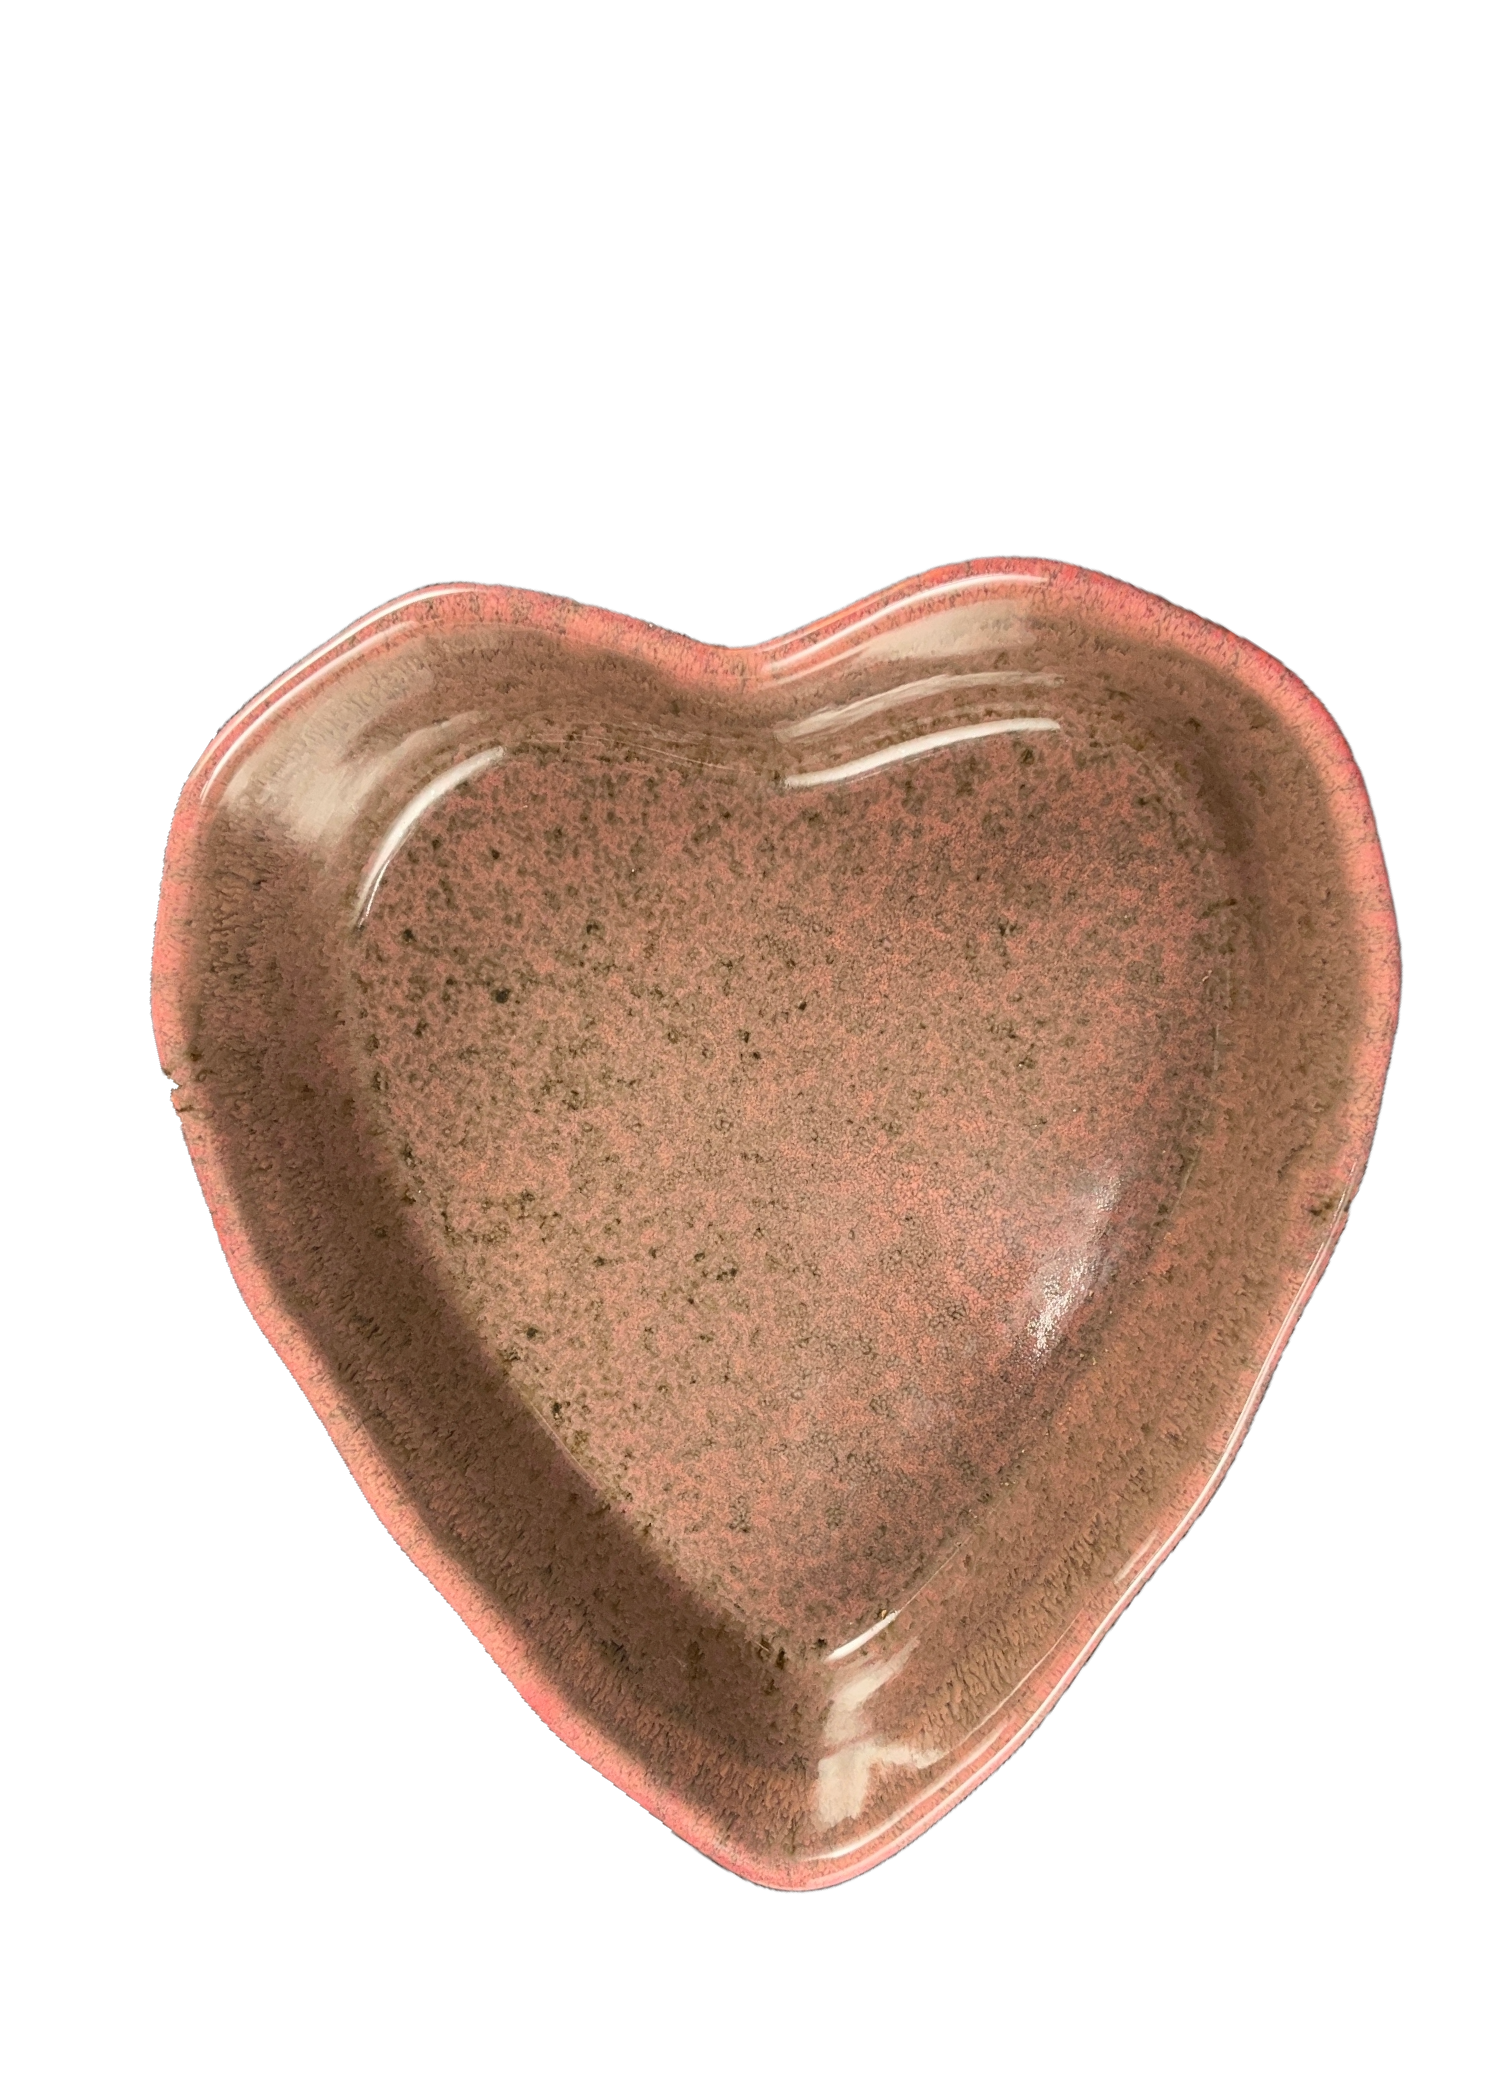 Herzschüssel große Liebe - Pflaume mit Backmischung weil Liebe durch den Magen geht